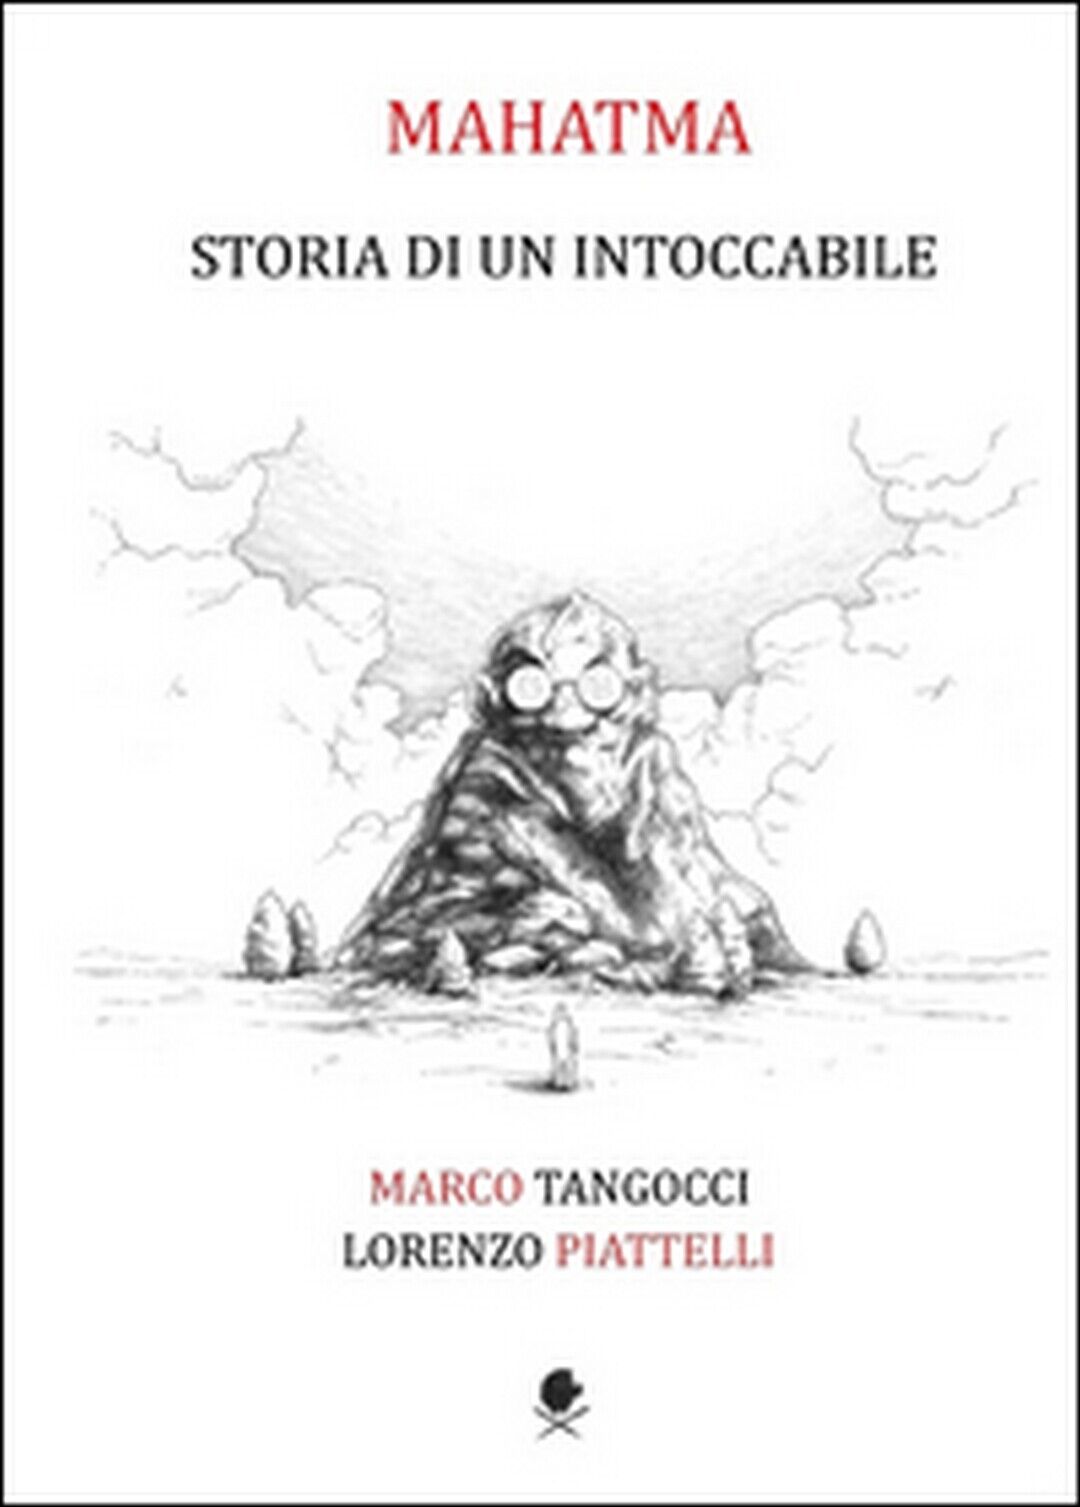 Mahatma. Storia di un intoccabile, Lorenzo Piattelli, Marco Tangocci,  2015